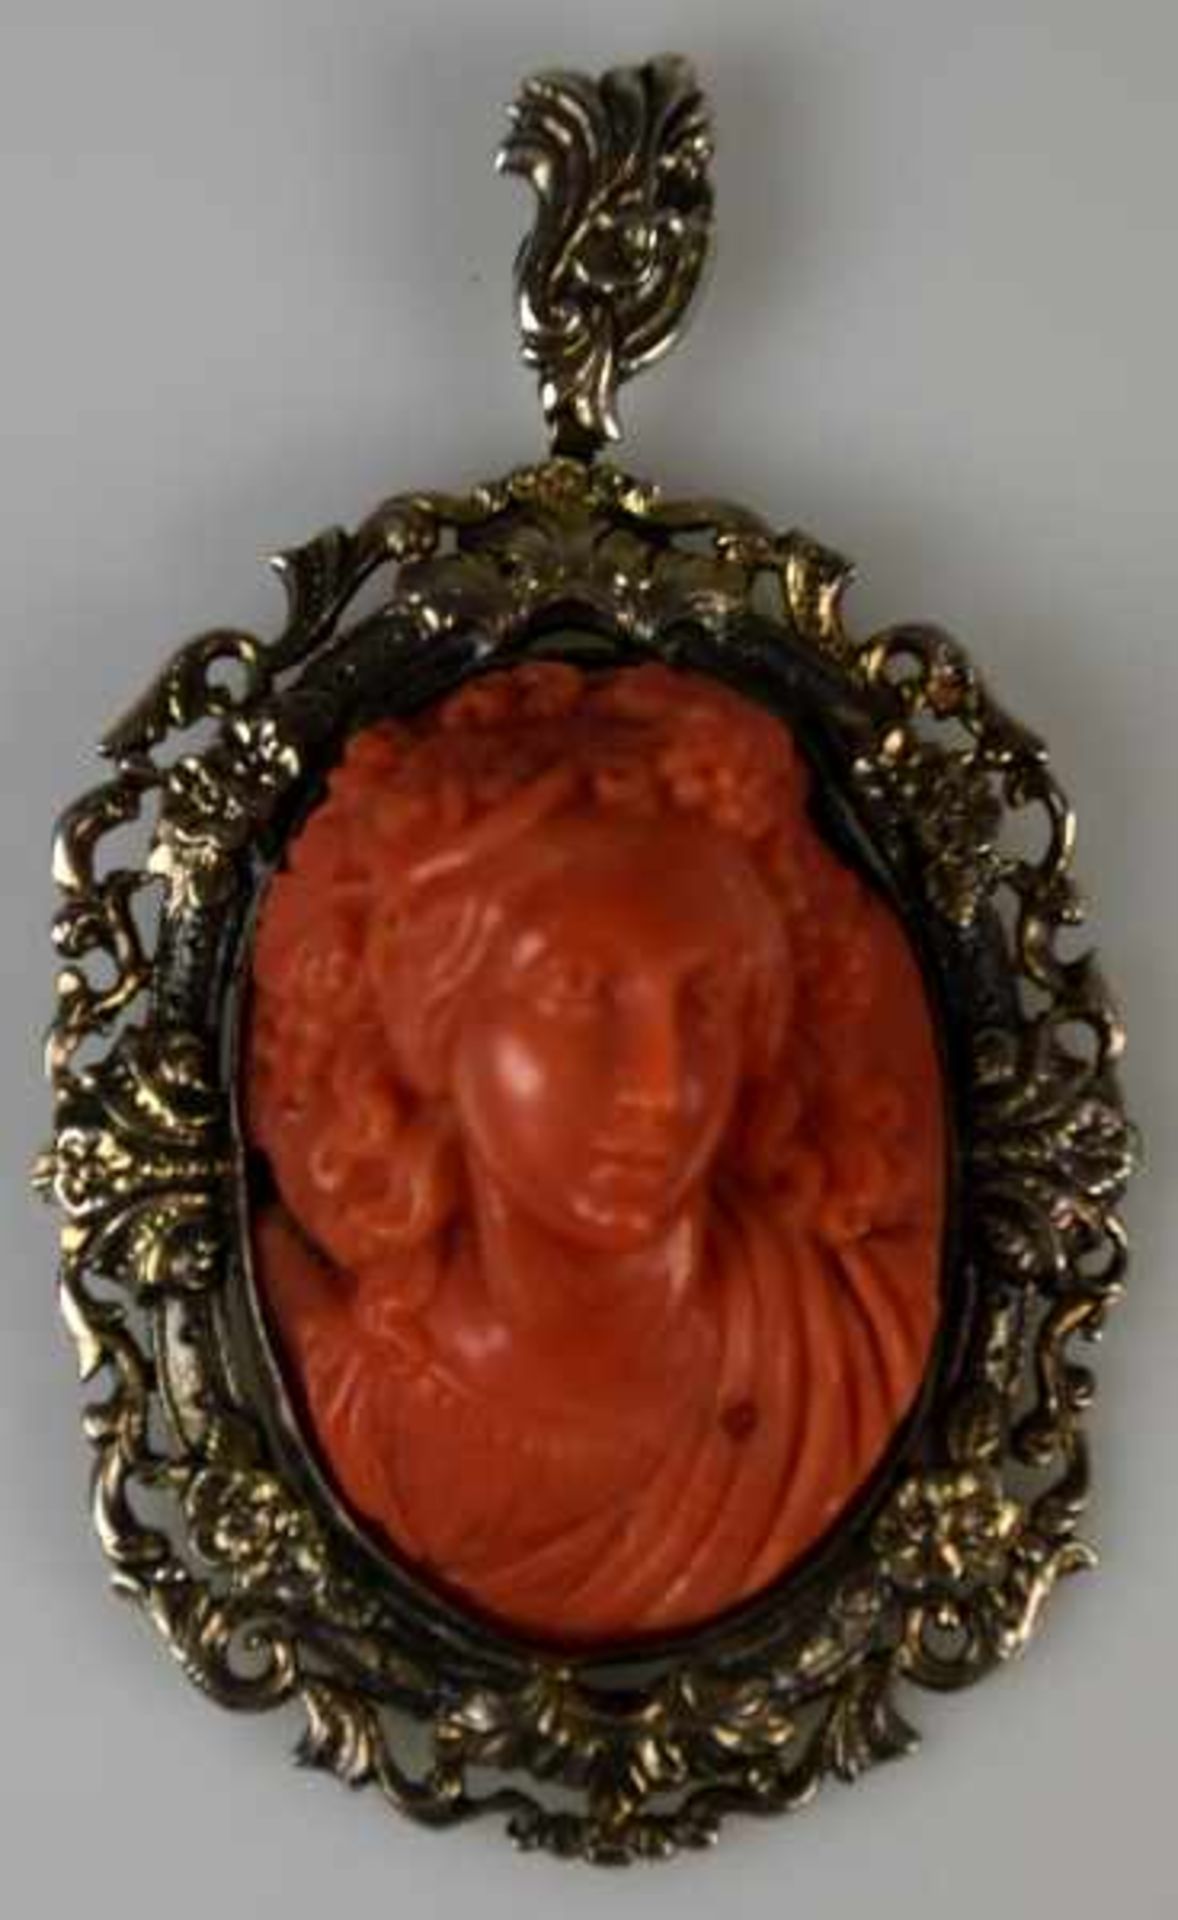 KAMEE-ANHHÄNGER oval, Frauenporträt mit Weintrauben im Haar, in hellroter Koralle geschnitten,